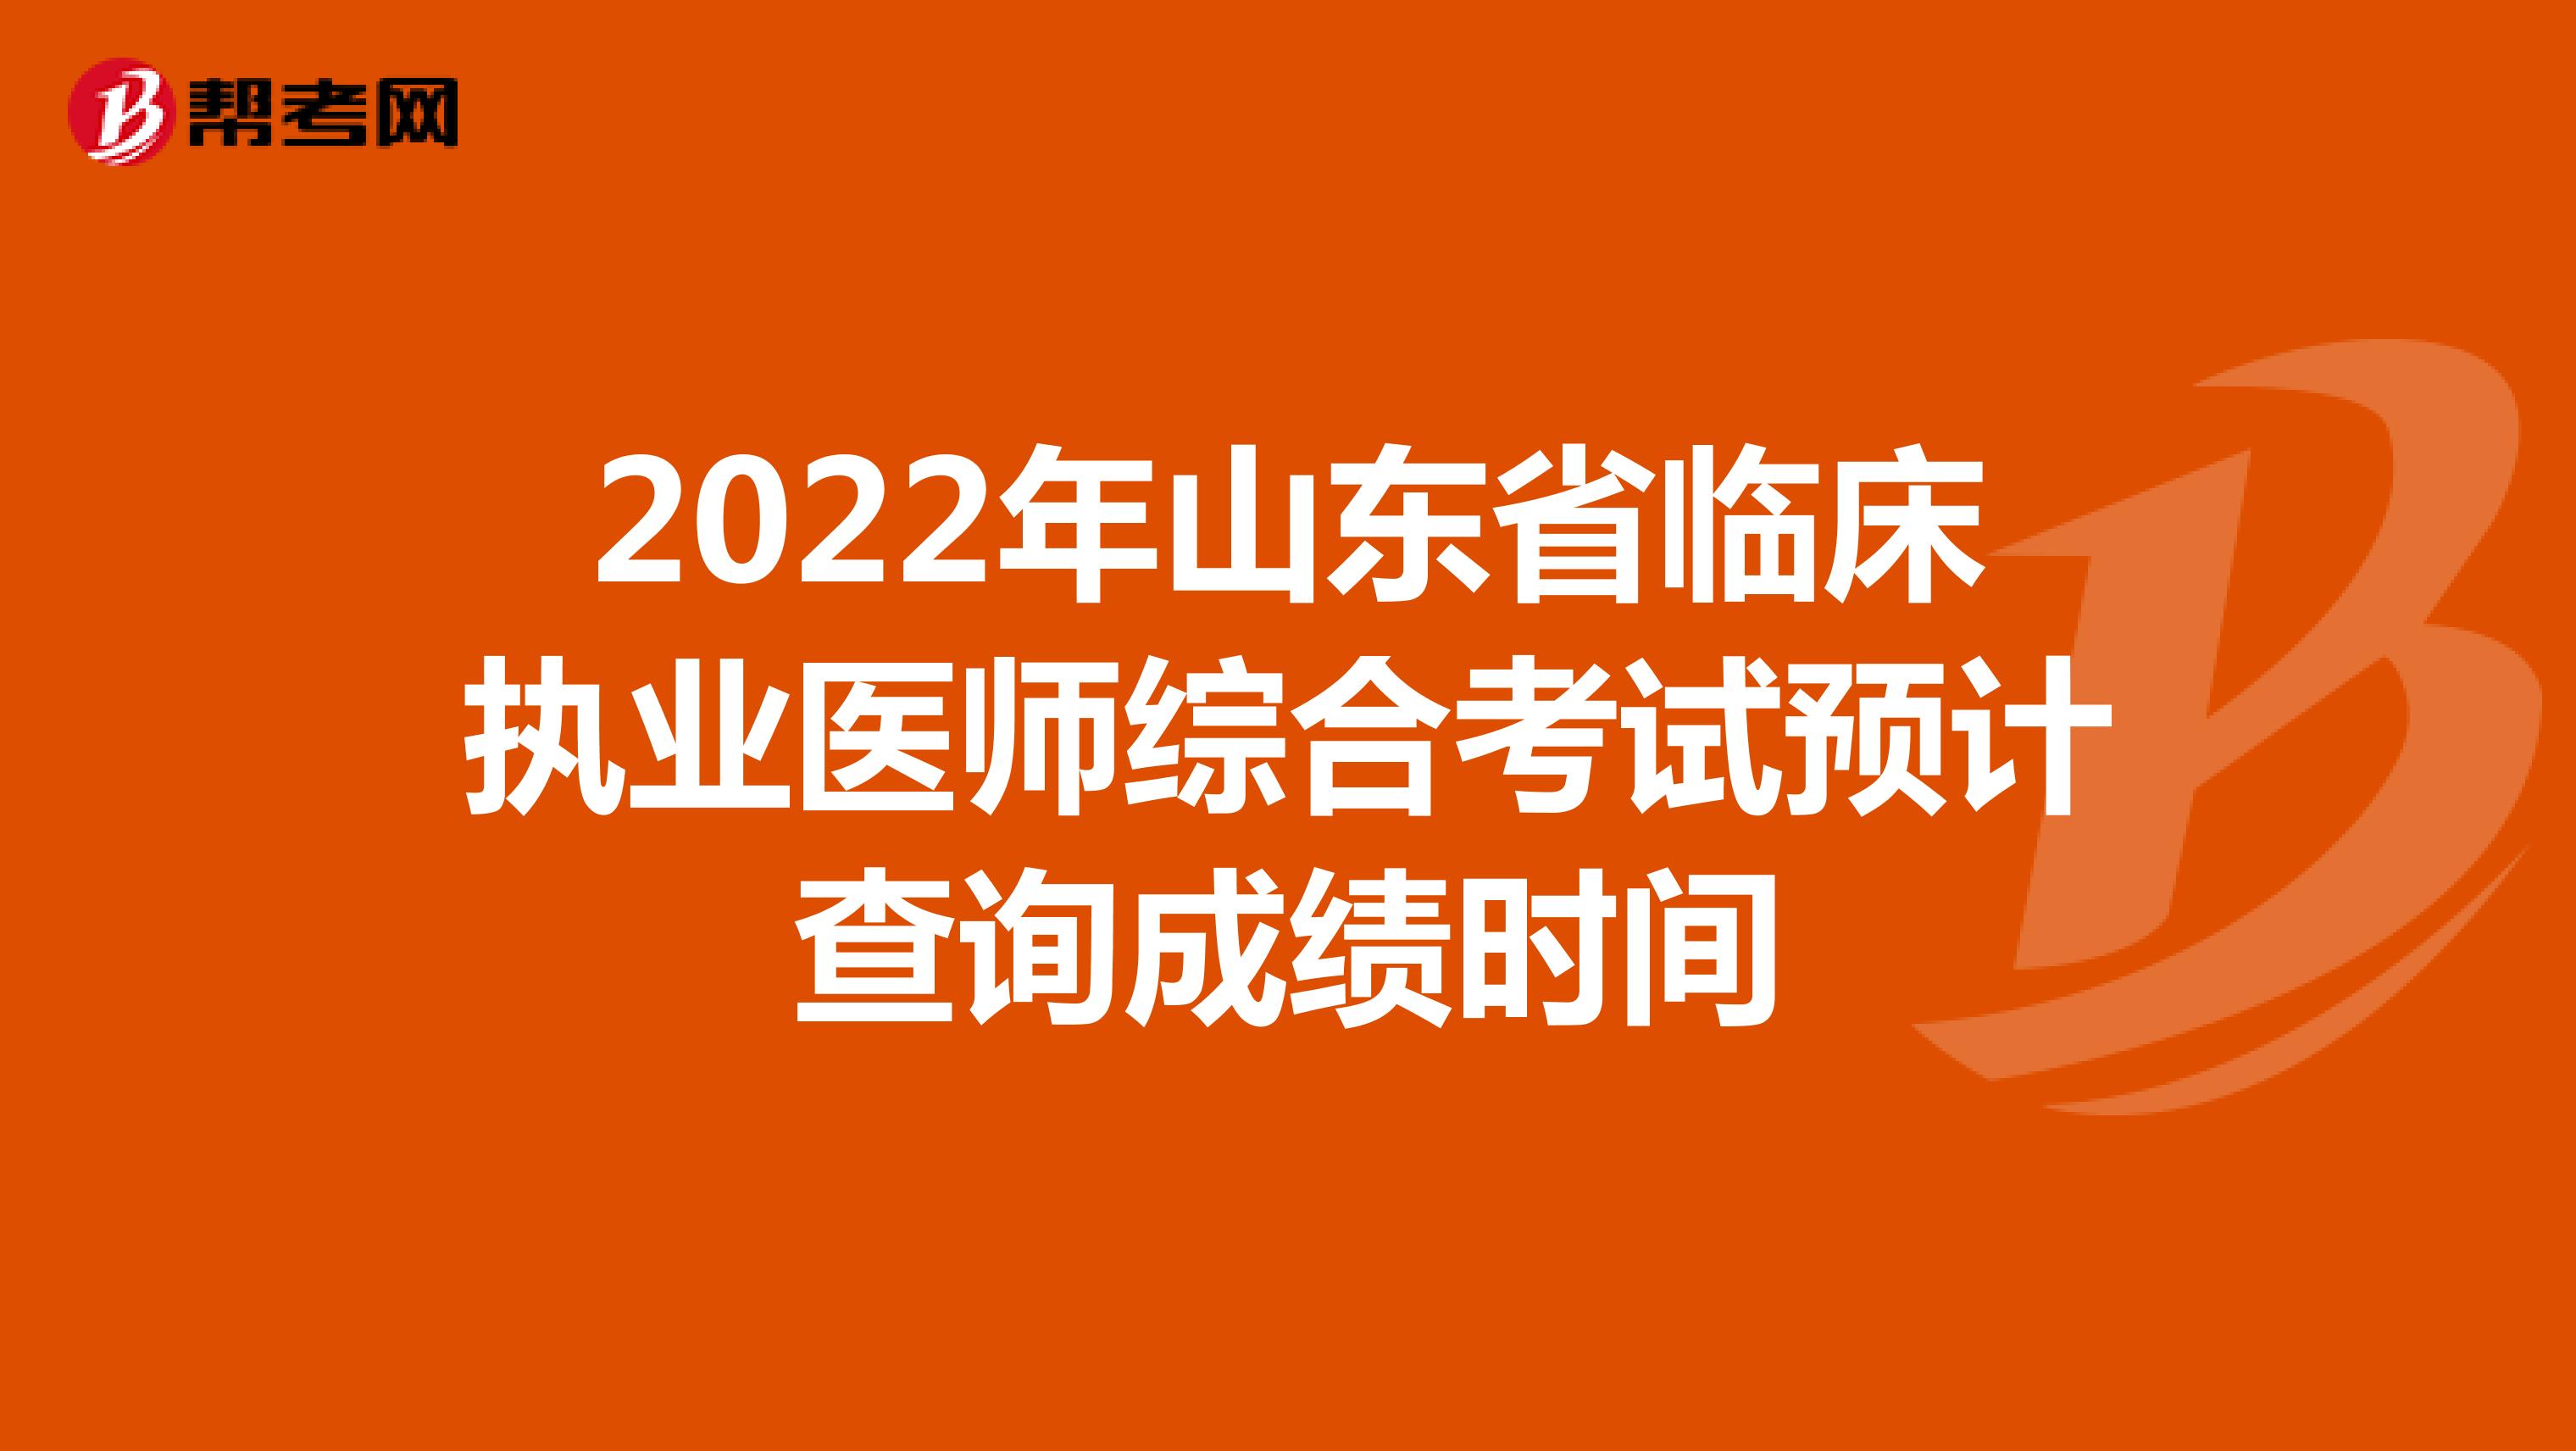 2022年山东省临床执业医师综合考试预计查询成绩时间